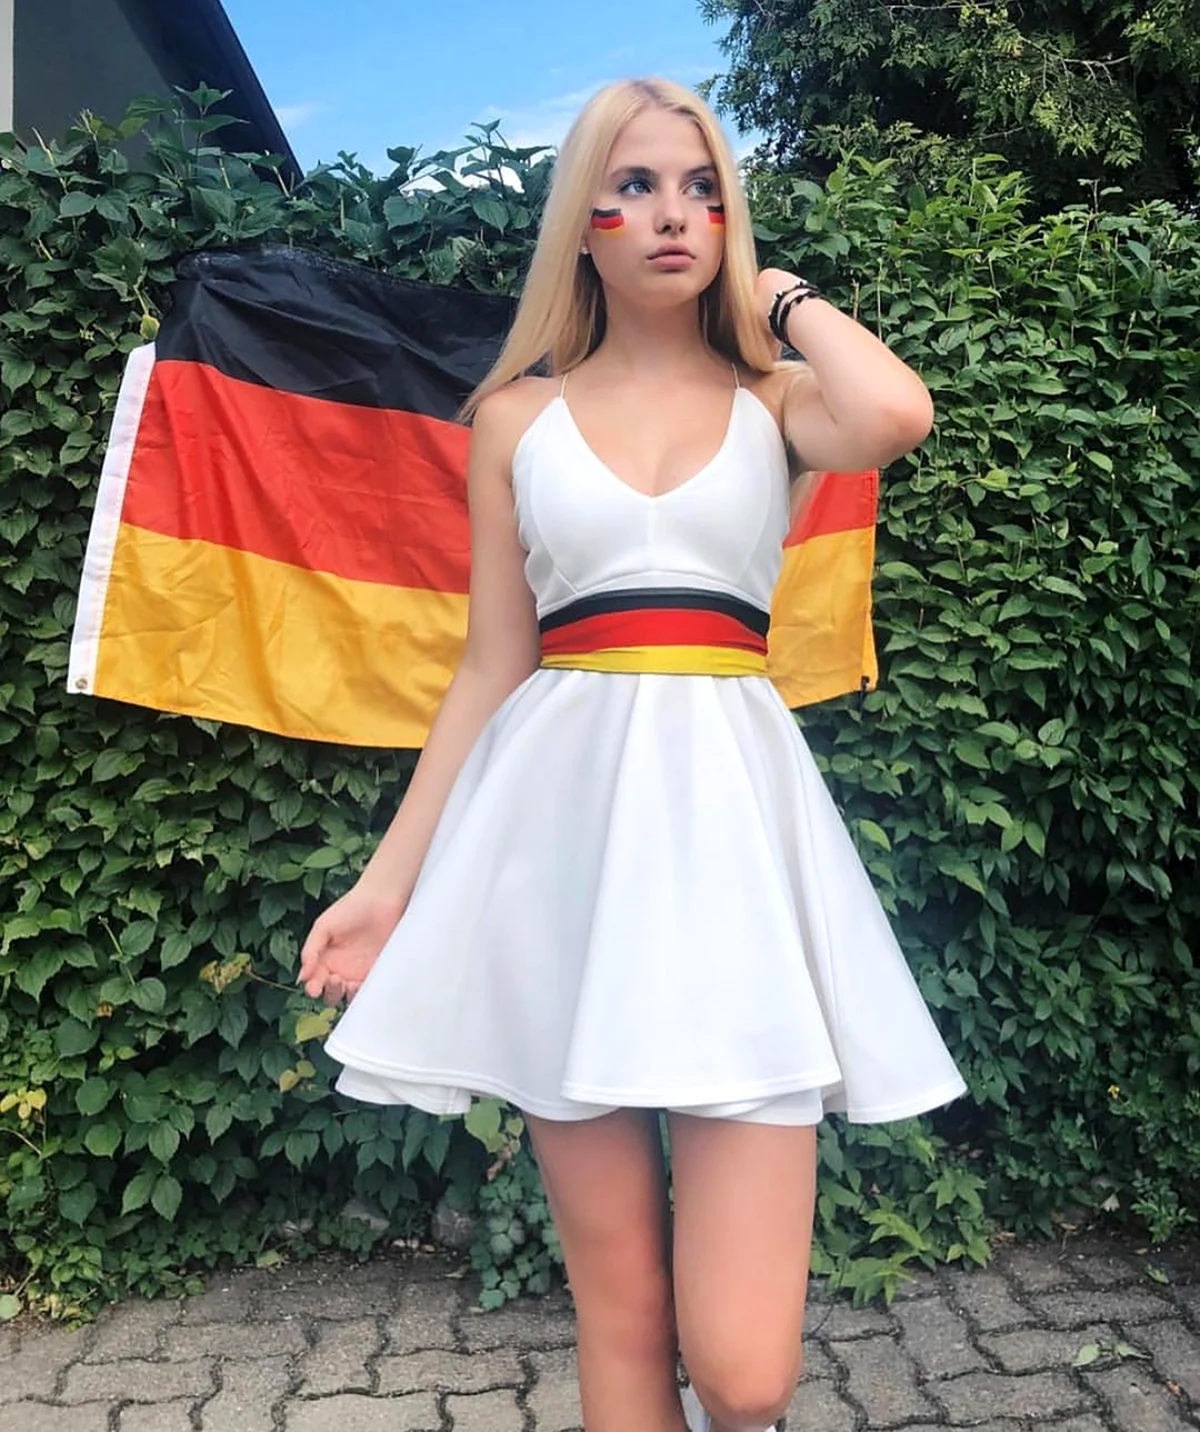 German девушки. Красивая девушка